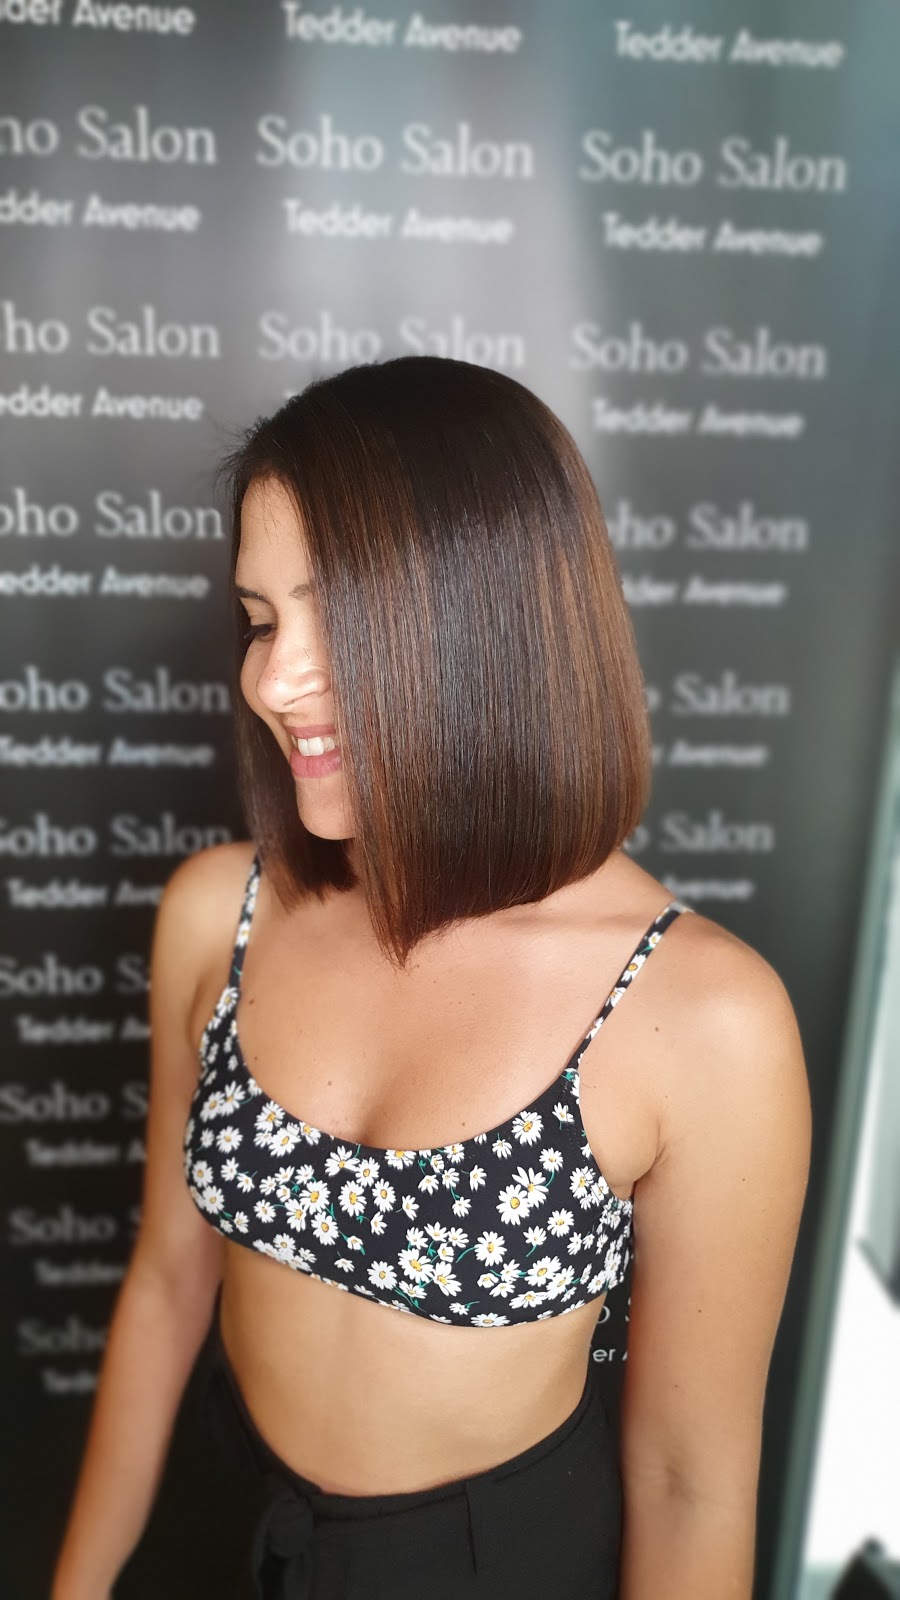 Soho Salon on Tedder | hair care | 15 Tedder Ave, Main Beach QLD 4217, Australia | 0755324217 OR +61 7 5532 4217